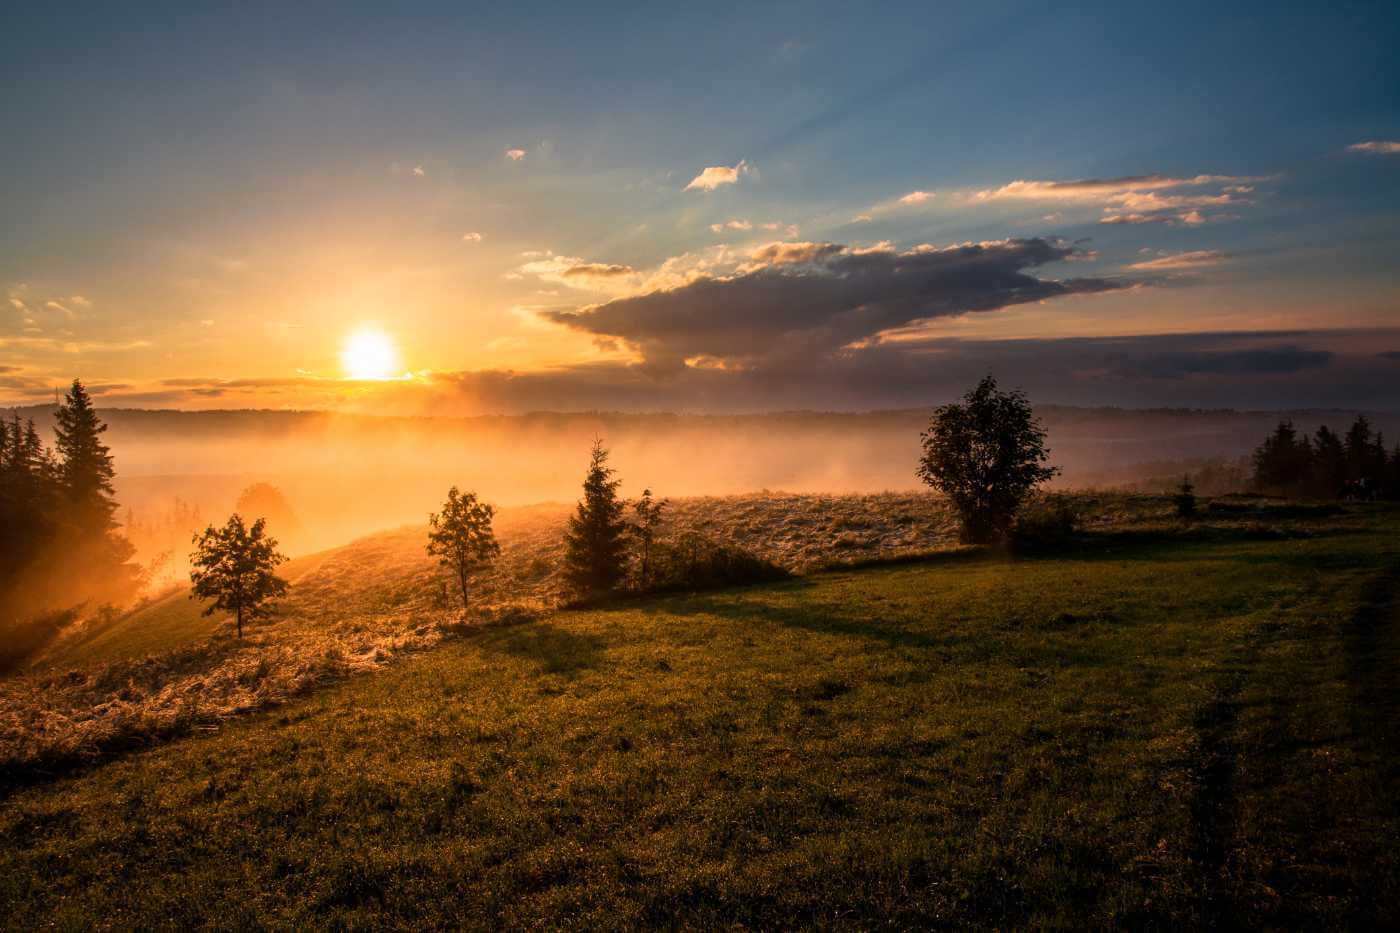 Sonnenaufgang in der Natur – LetsCast.fm spendet für den Klimaschutz